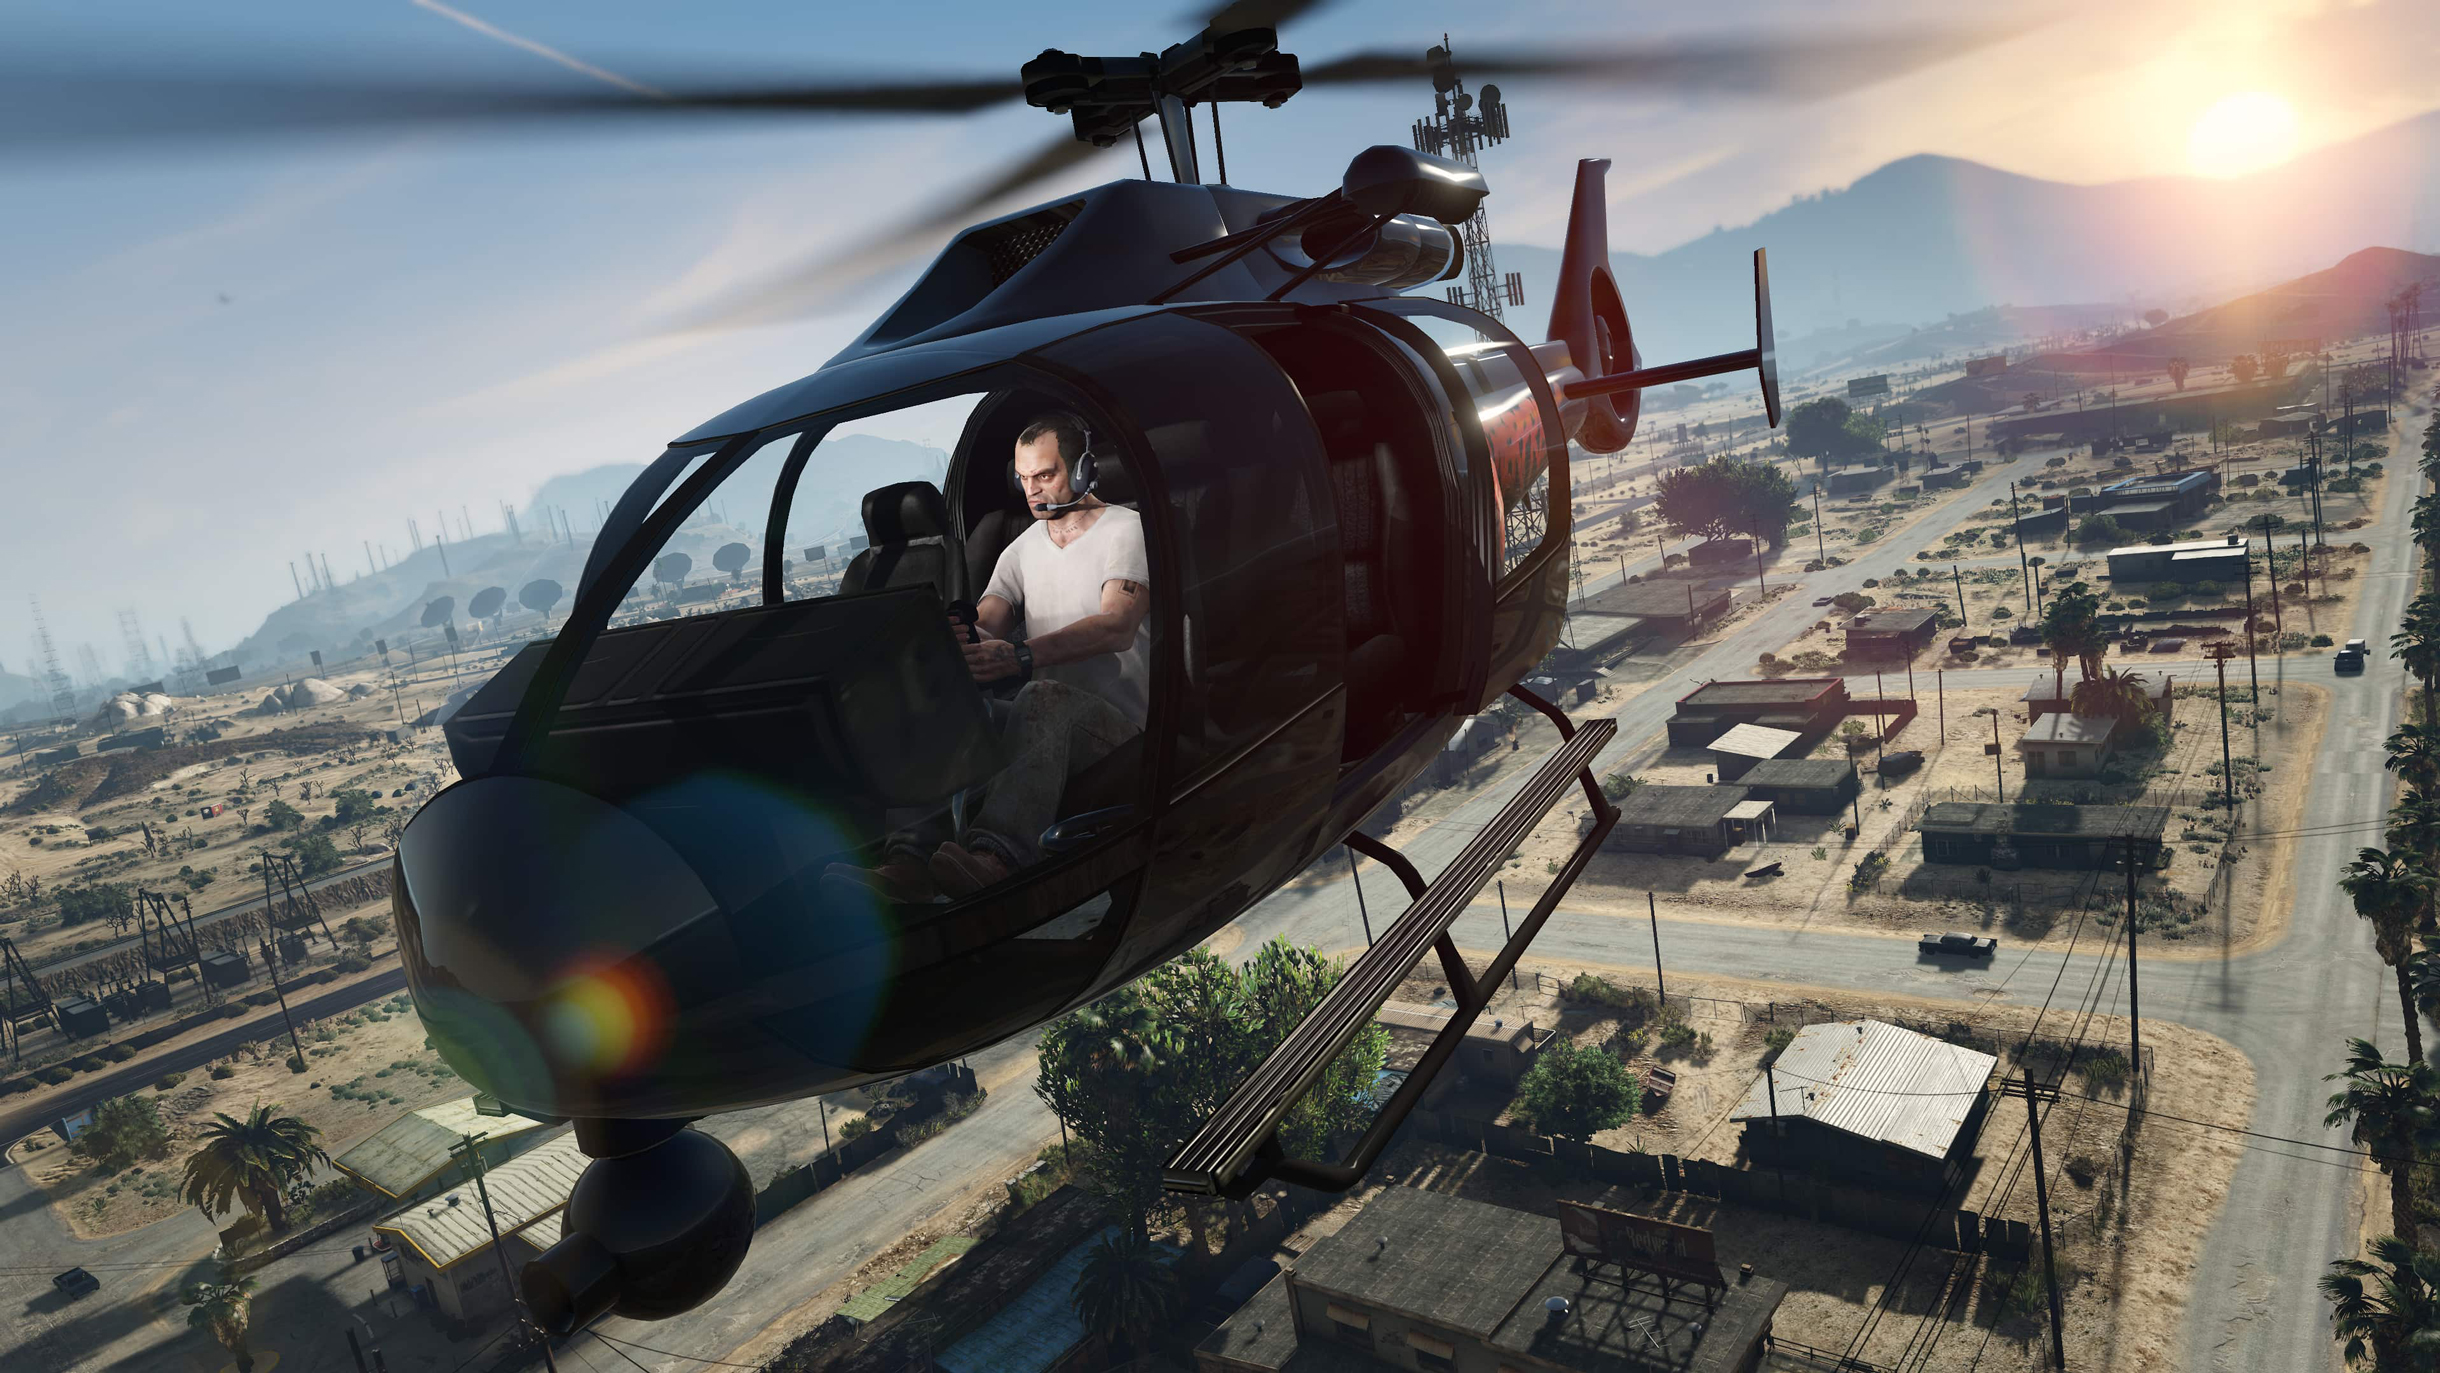 У Тревора есть лицензия пилота, поэтому ему легче управлять вертолетами, чем Майклу или Франклину